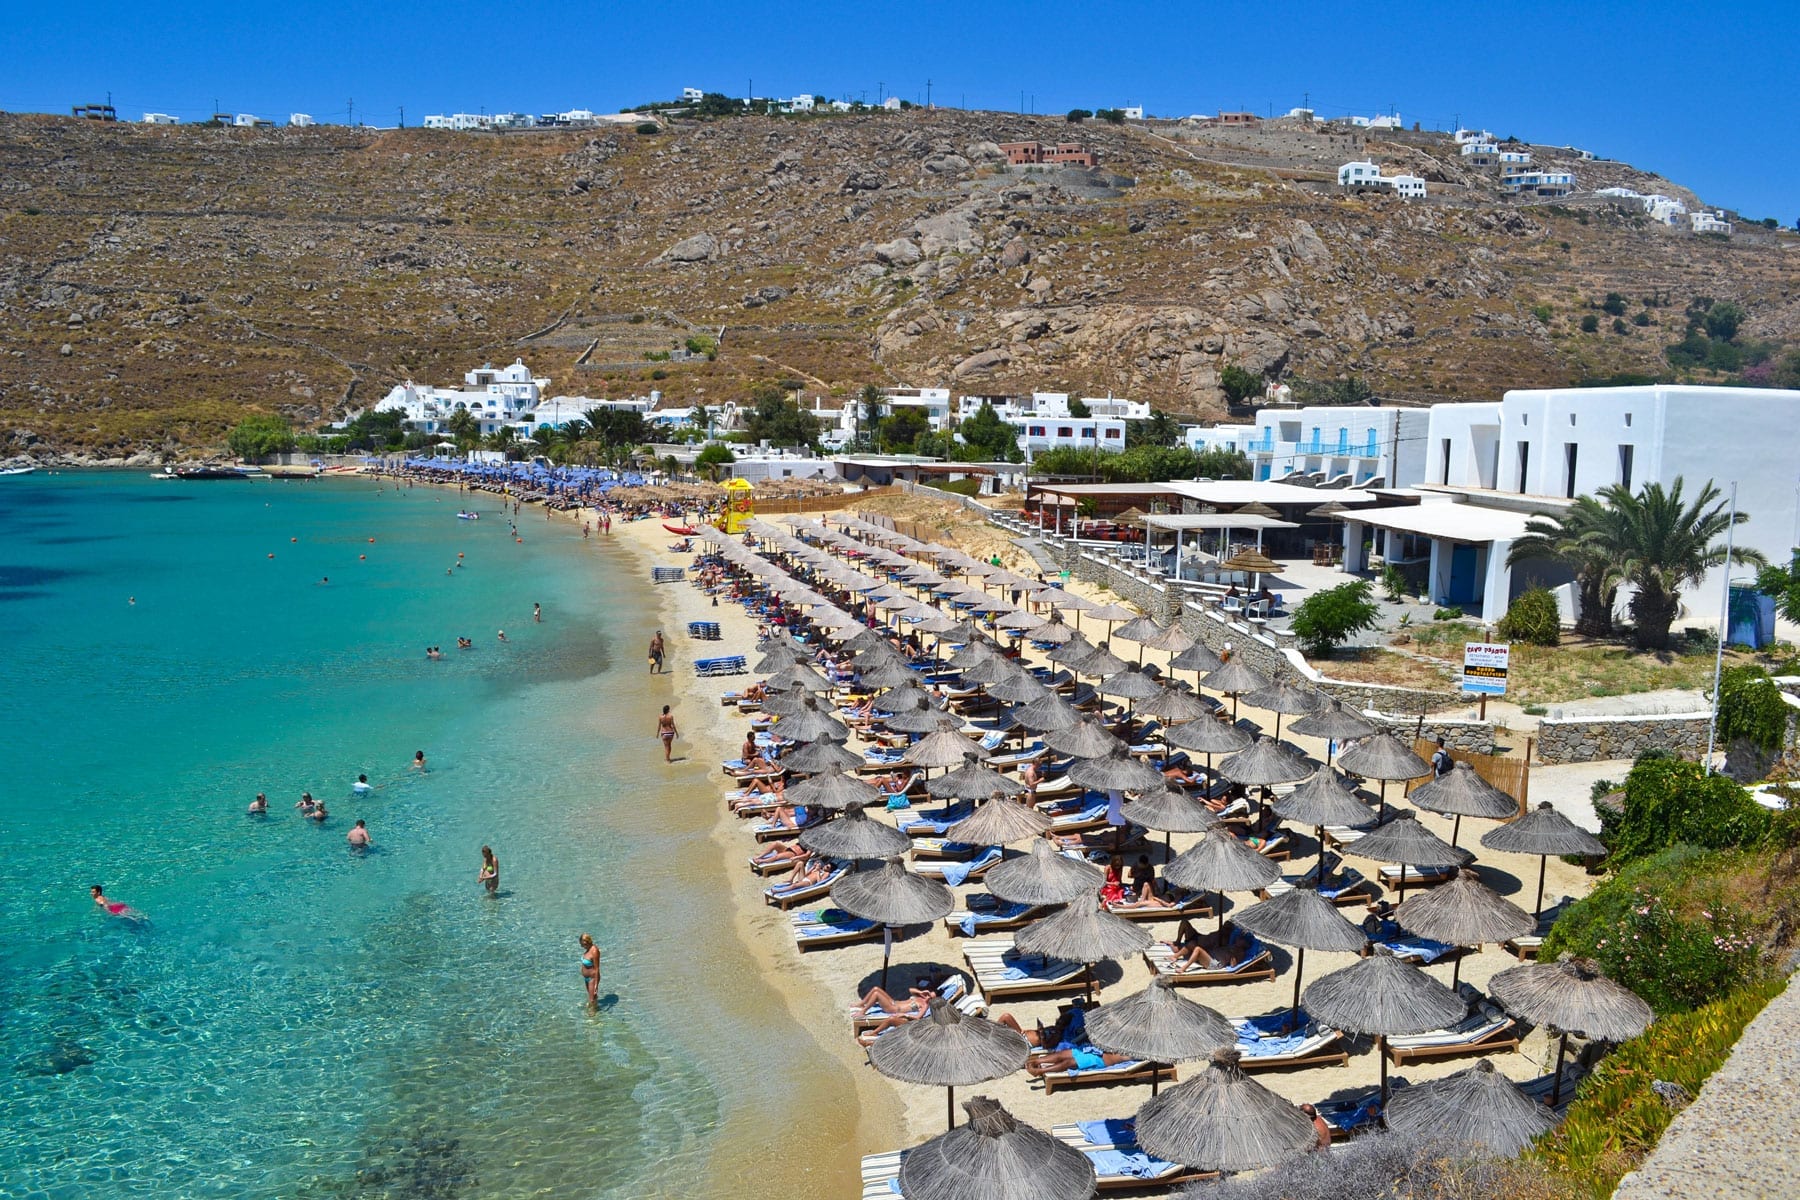 Les 15 meilleures plages de Mykonos (2021/22) - Les 15 meilleures plages de Mykonos (2021/22)